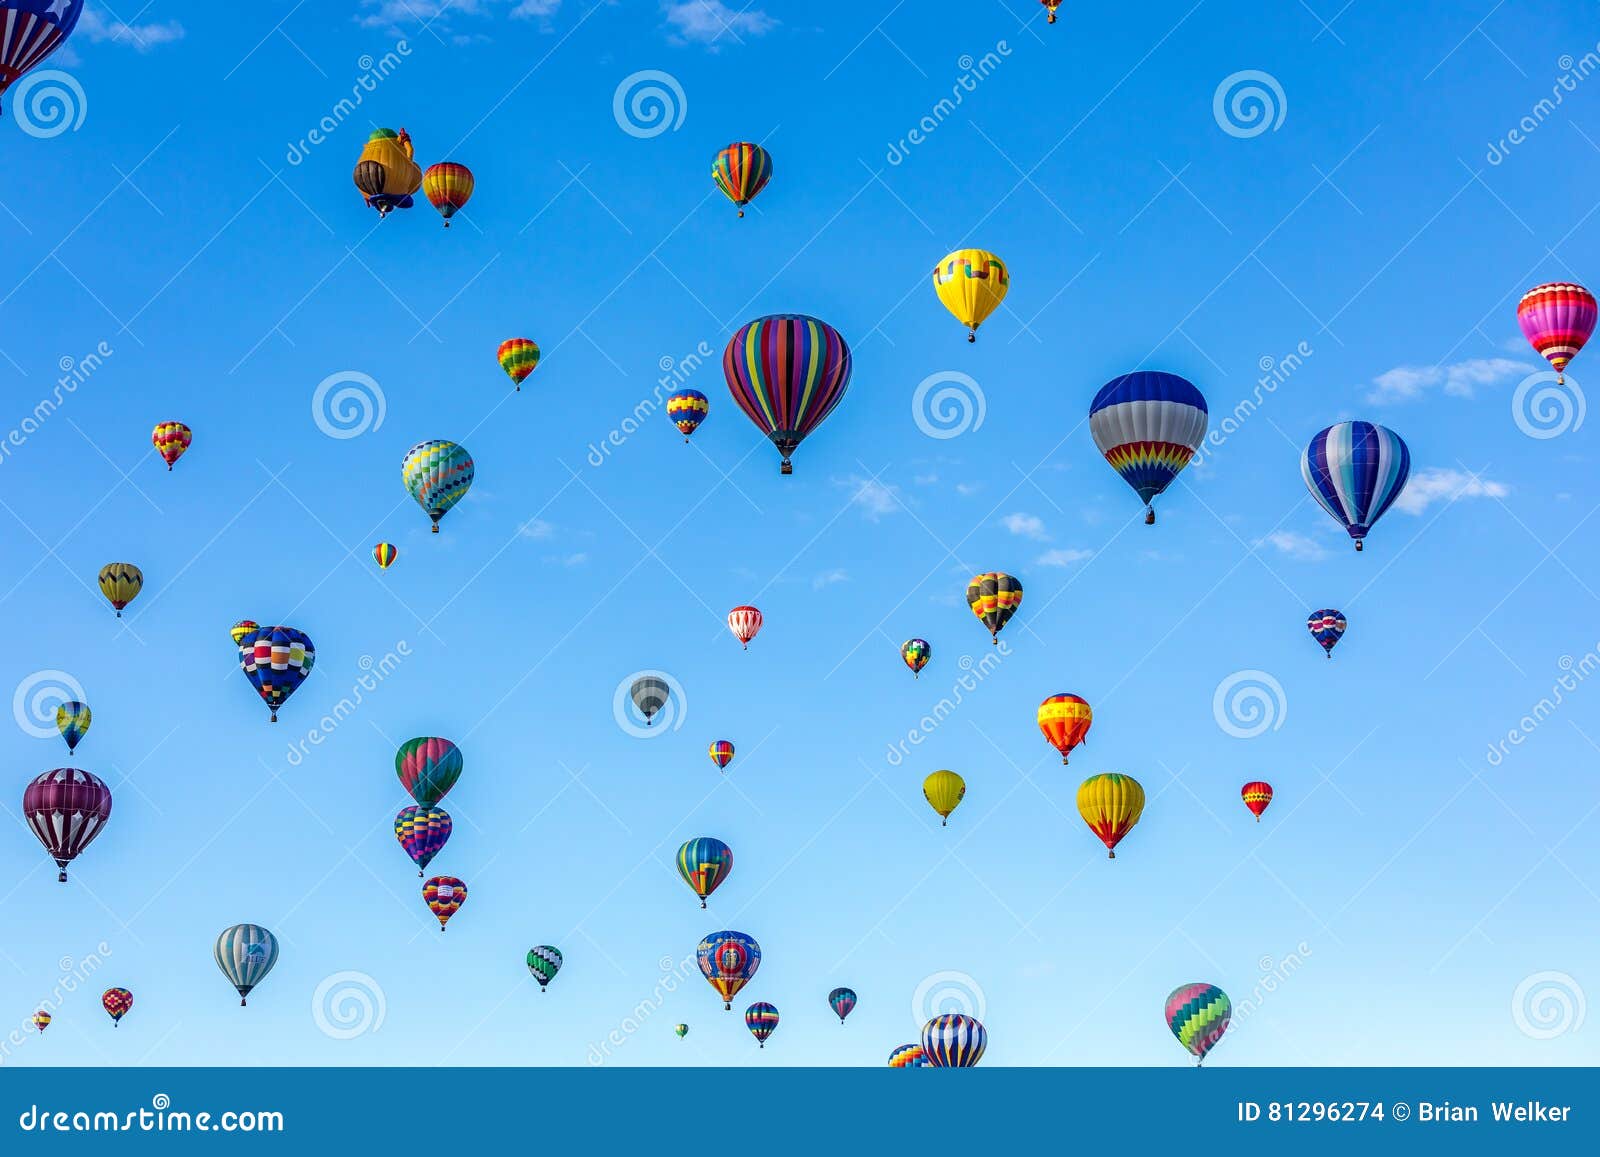 albuquerque hot air balloon fiesta 2016